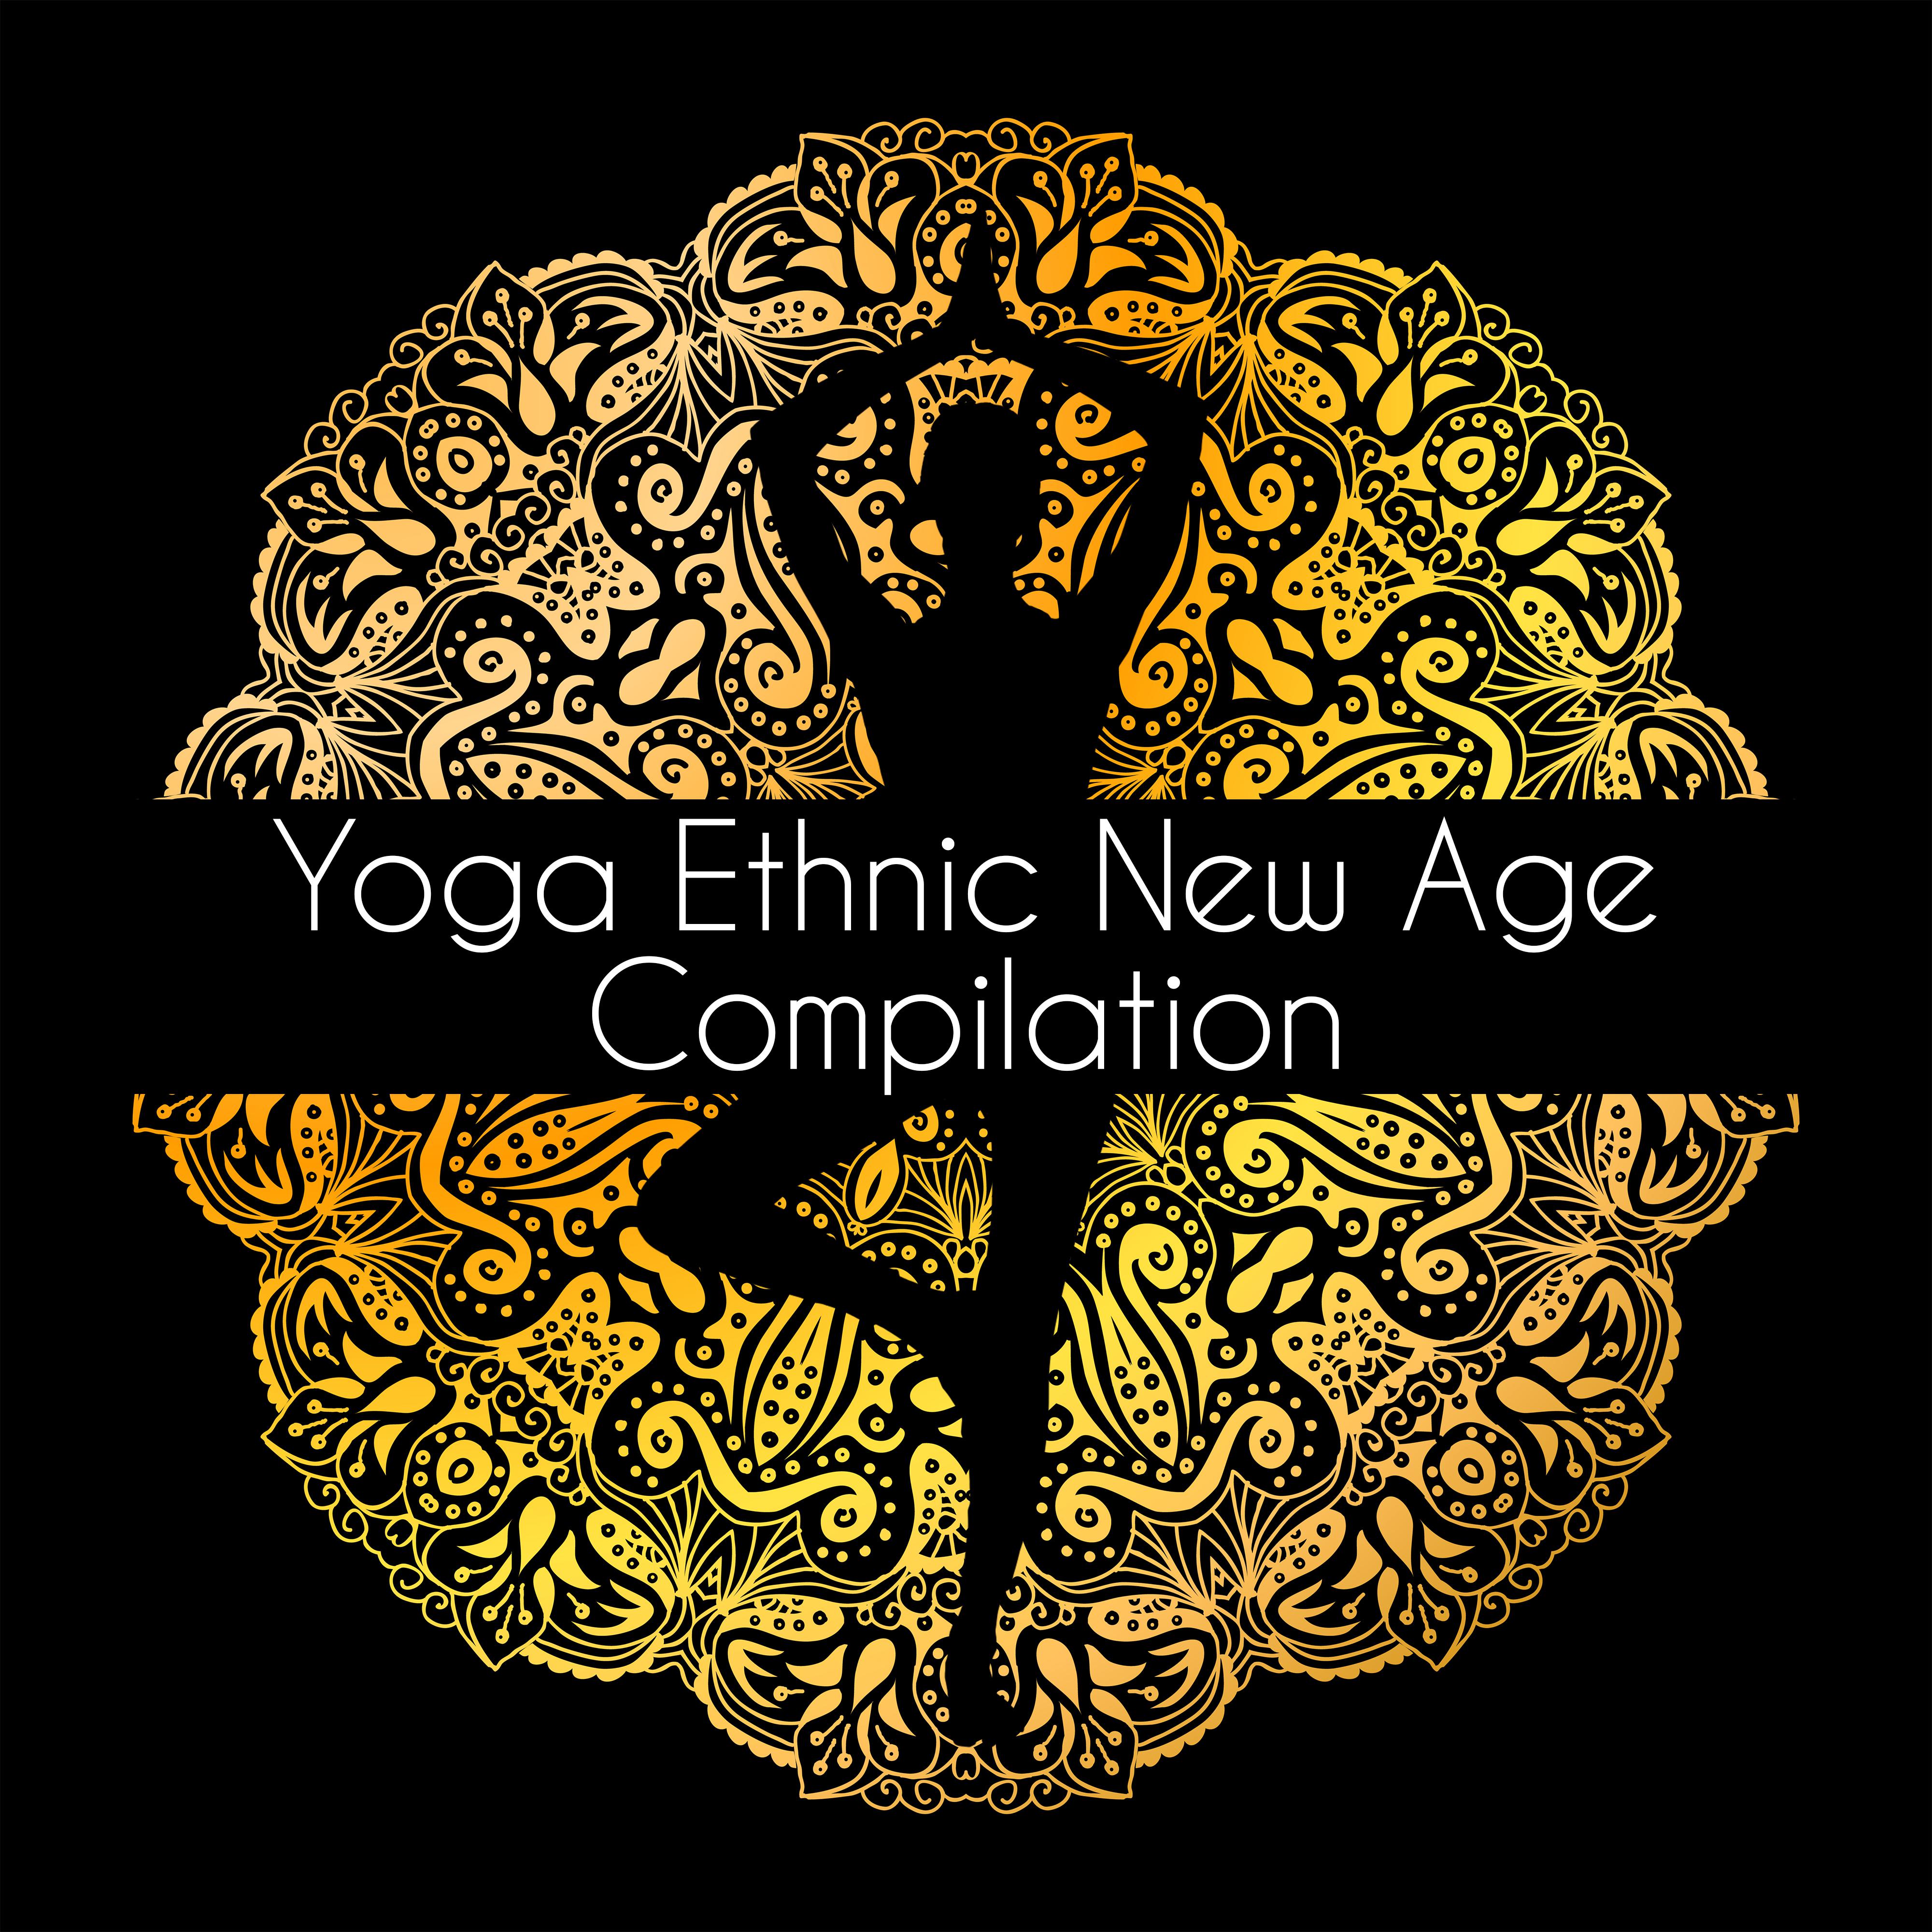 Yoga Ethnic New Age Compilation  Shamanic Vocals, Japanese  Chinese Melodies, African Native Rhythms yu jia he ming xiang dong fang he yuan sheng de xuan lv